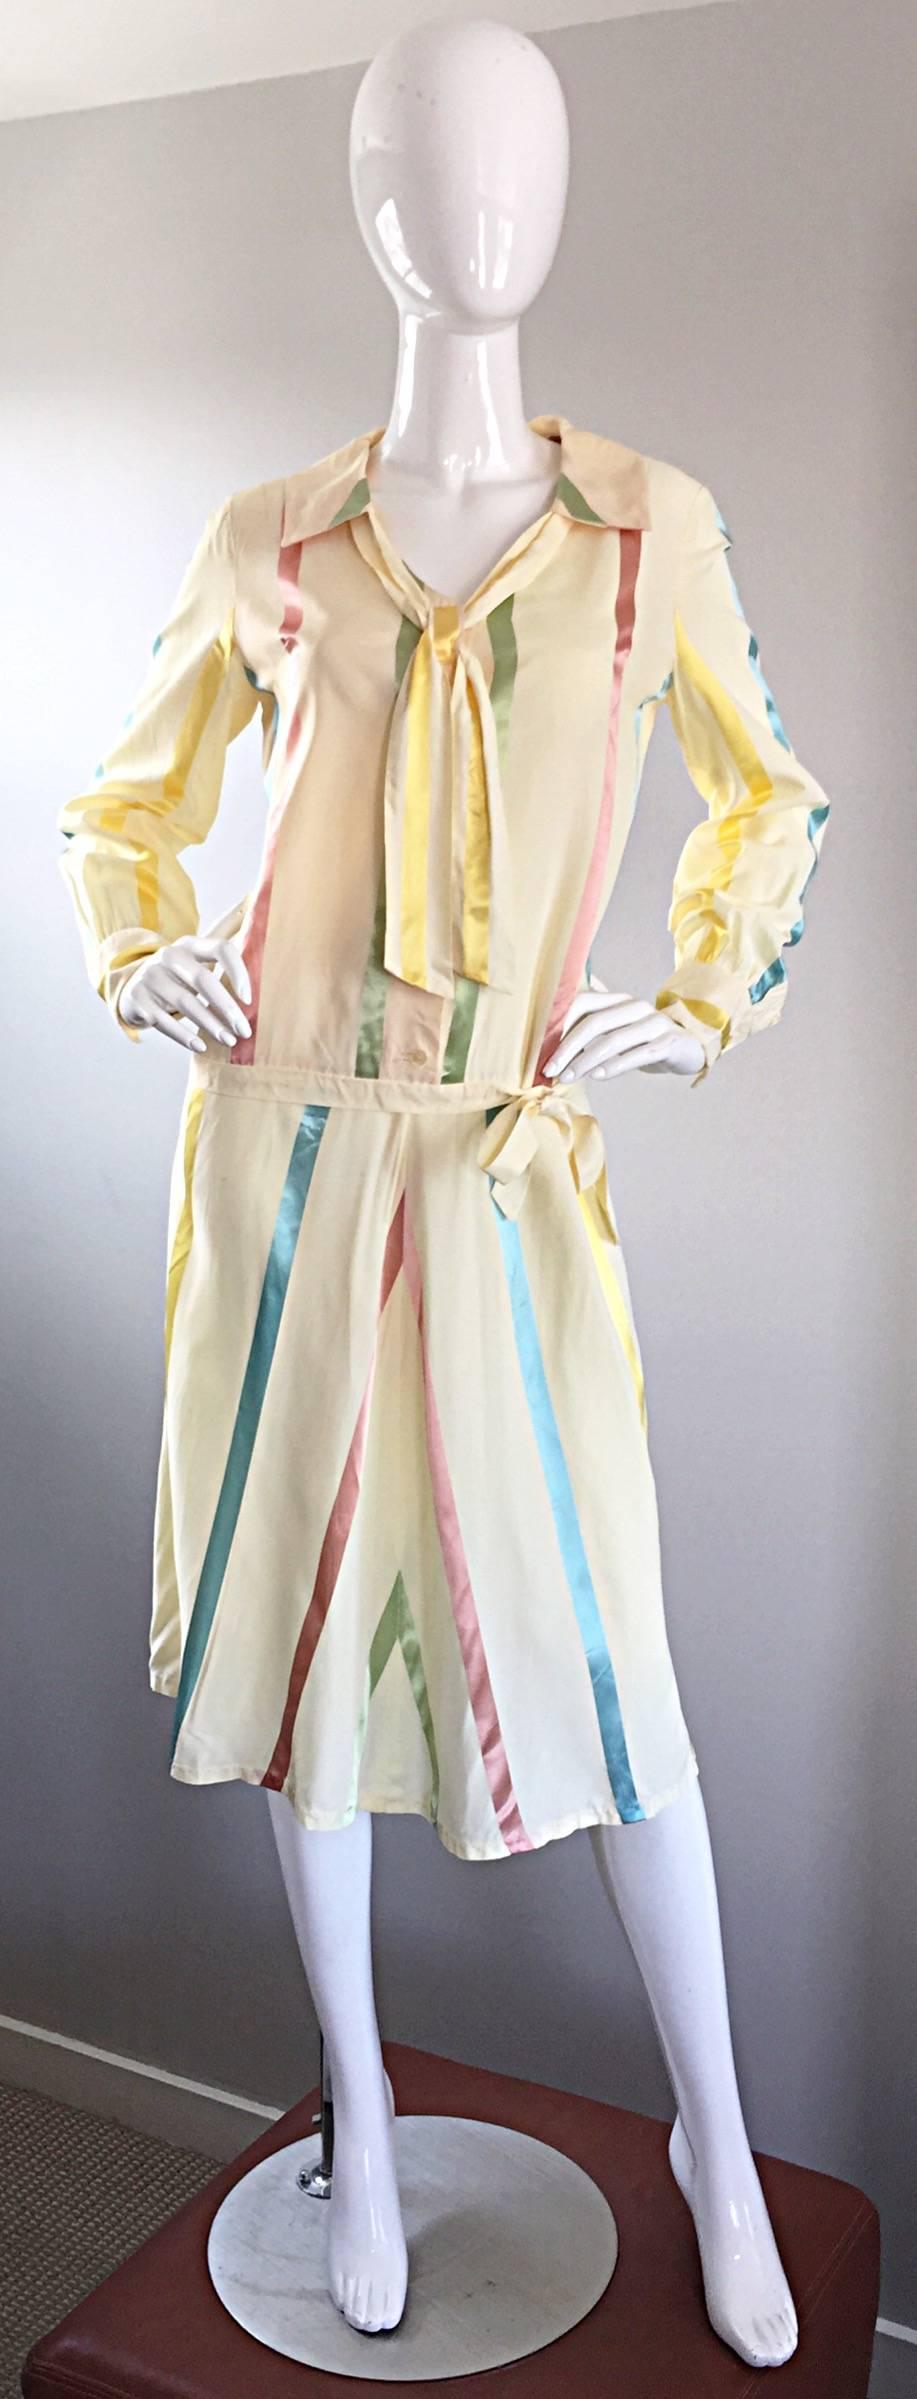 Incroyablement chic robe vintage en soie des années 20 ! Style classique à taille basse avec un nœud latéral à la taille. Attache à l'encolure. Soie ivoire avec des rayures verticales bleu pastel, rose, jaune et vert. Fantastique style 